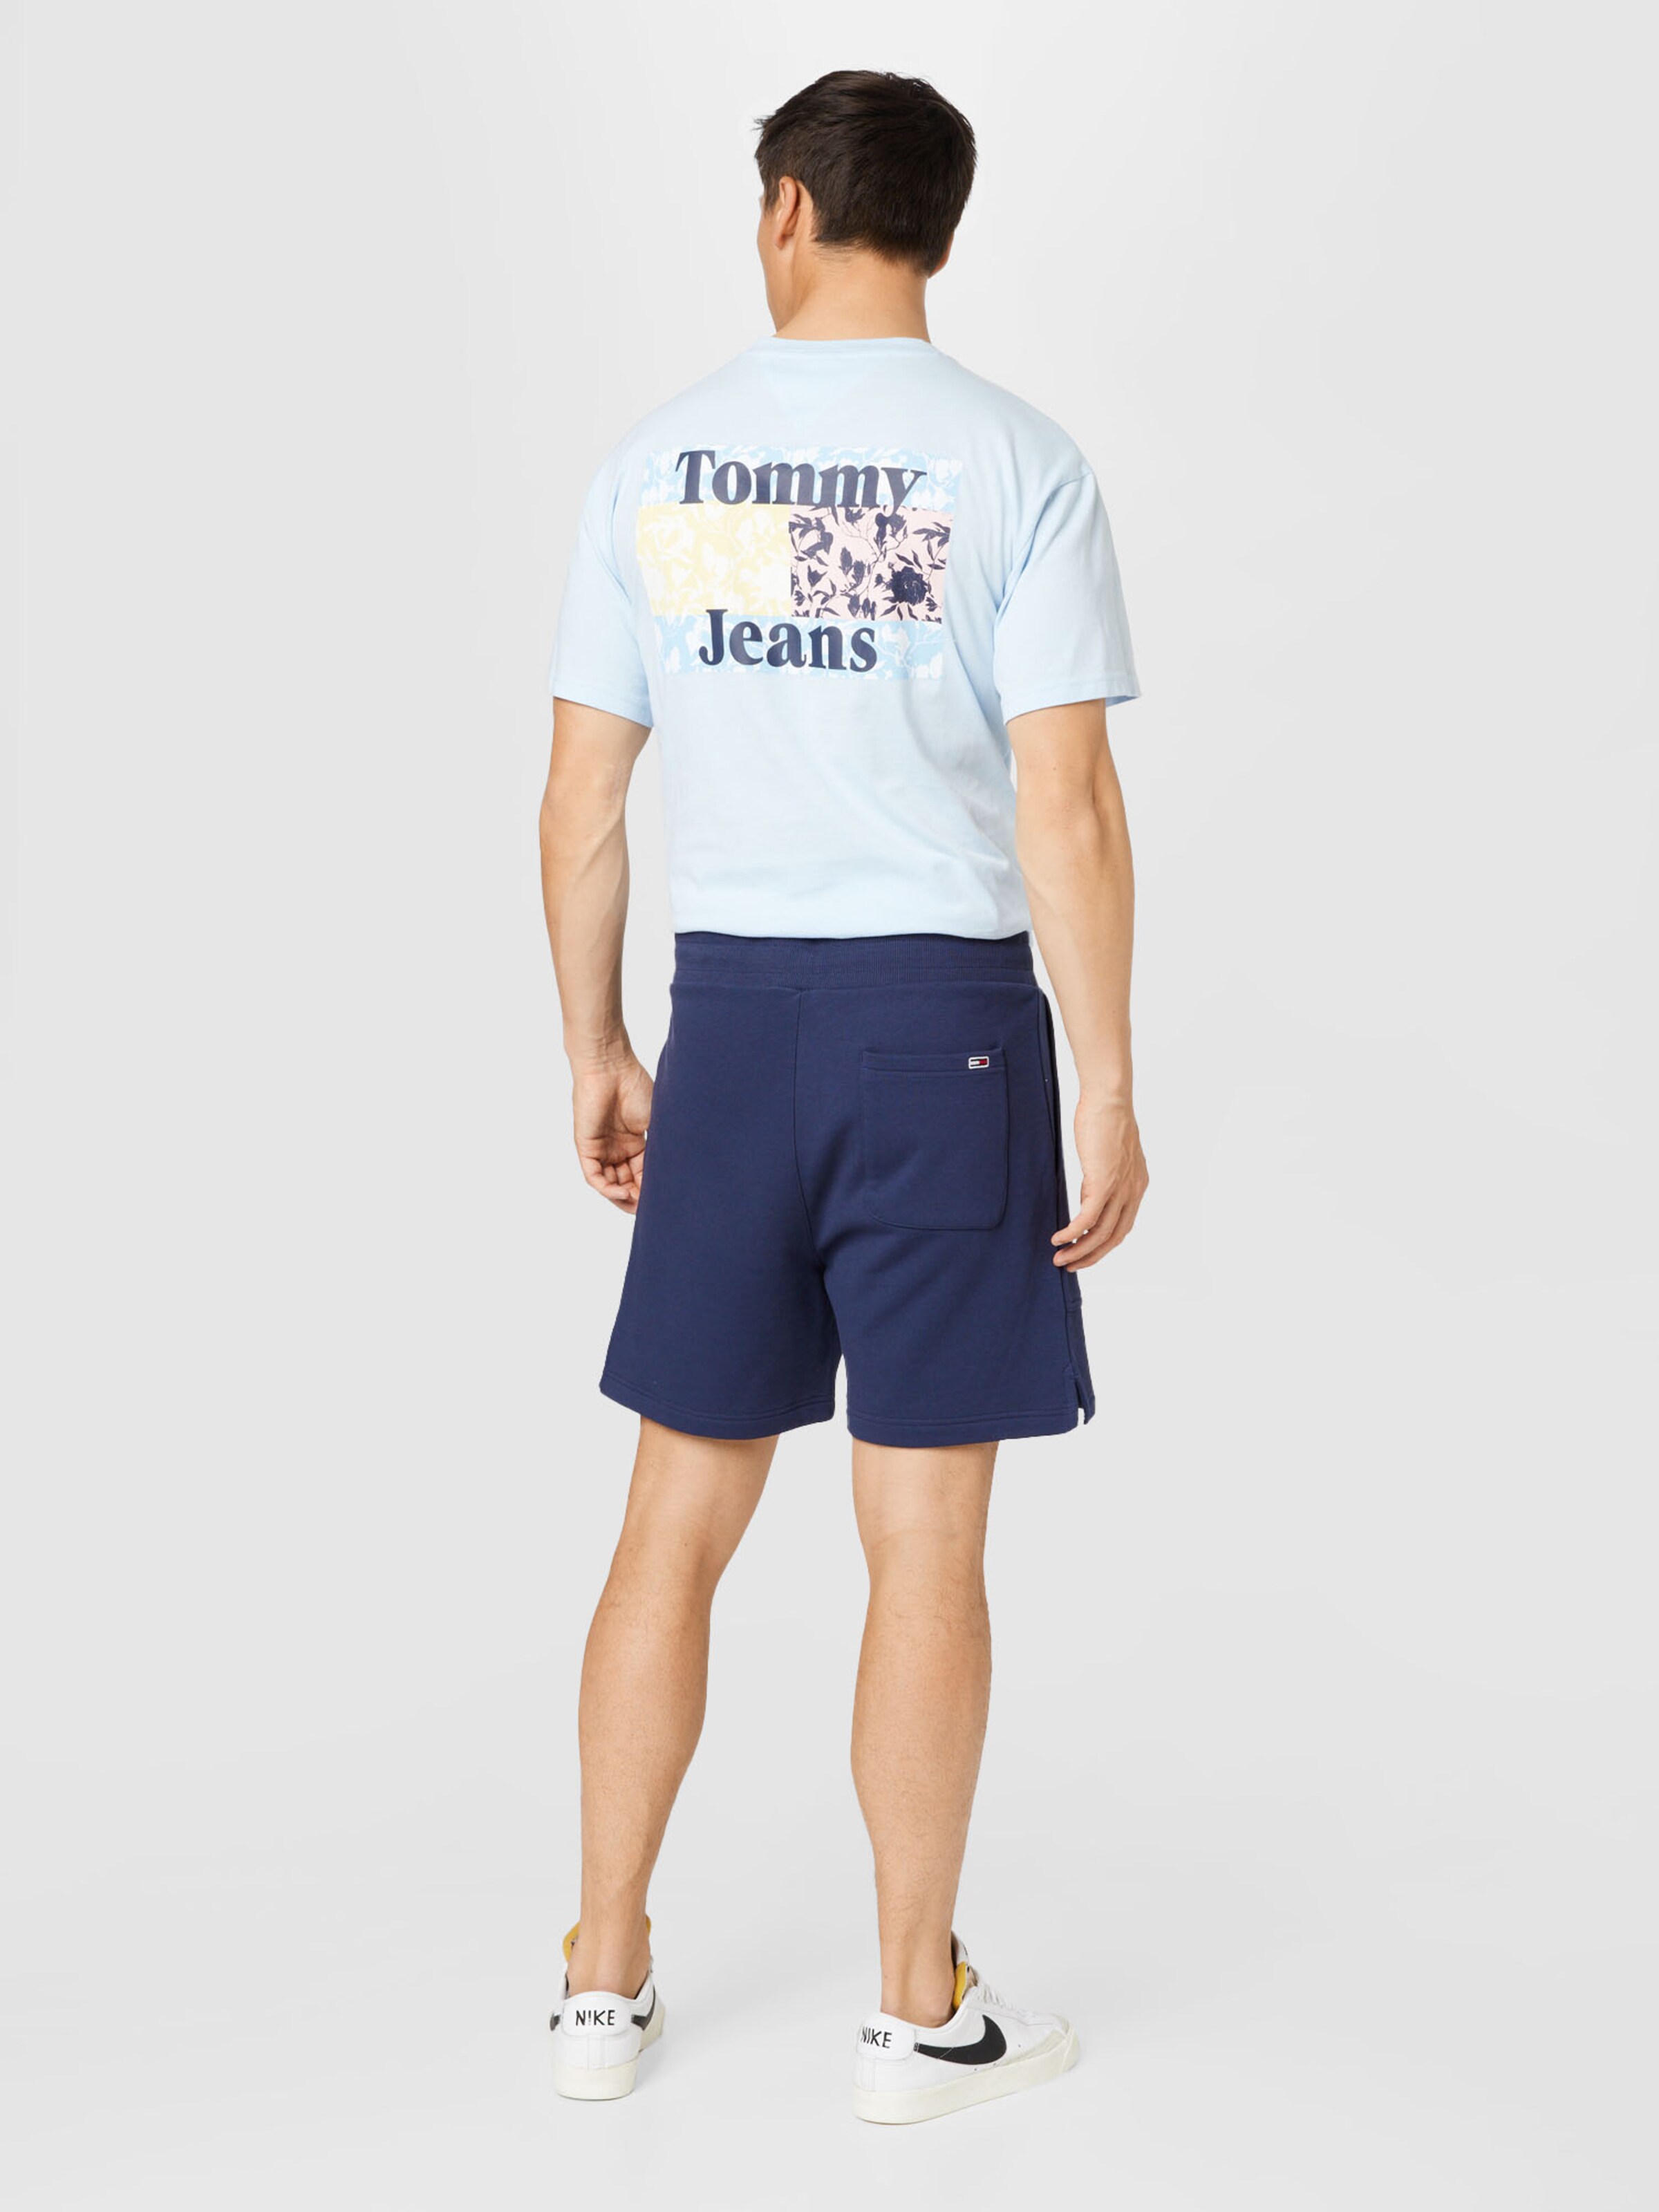 Männer Hosen Tommy Jeans Shorts in Navy - SU03459